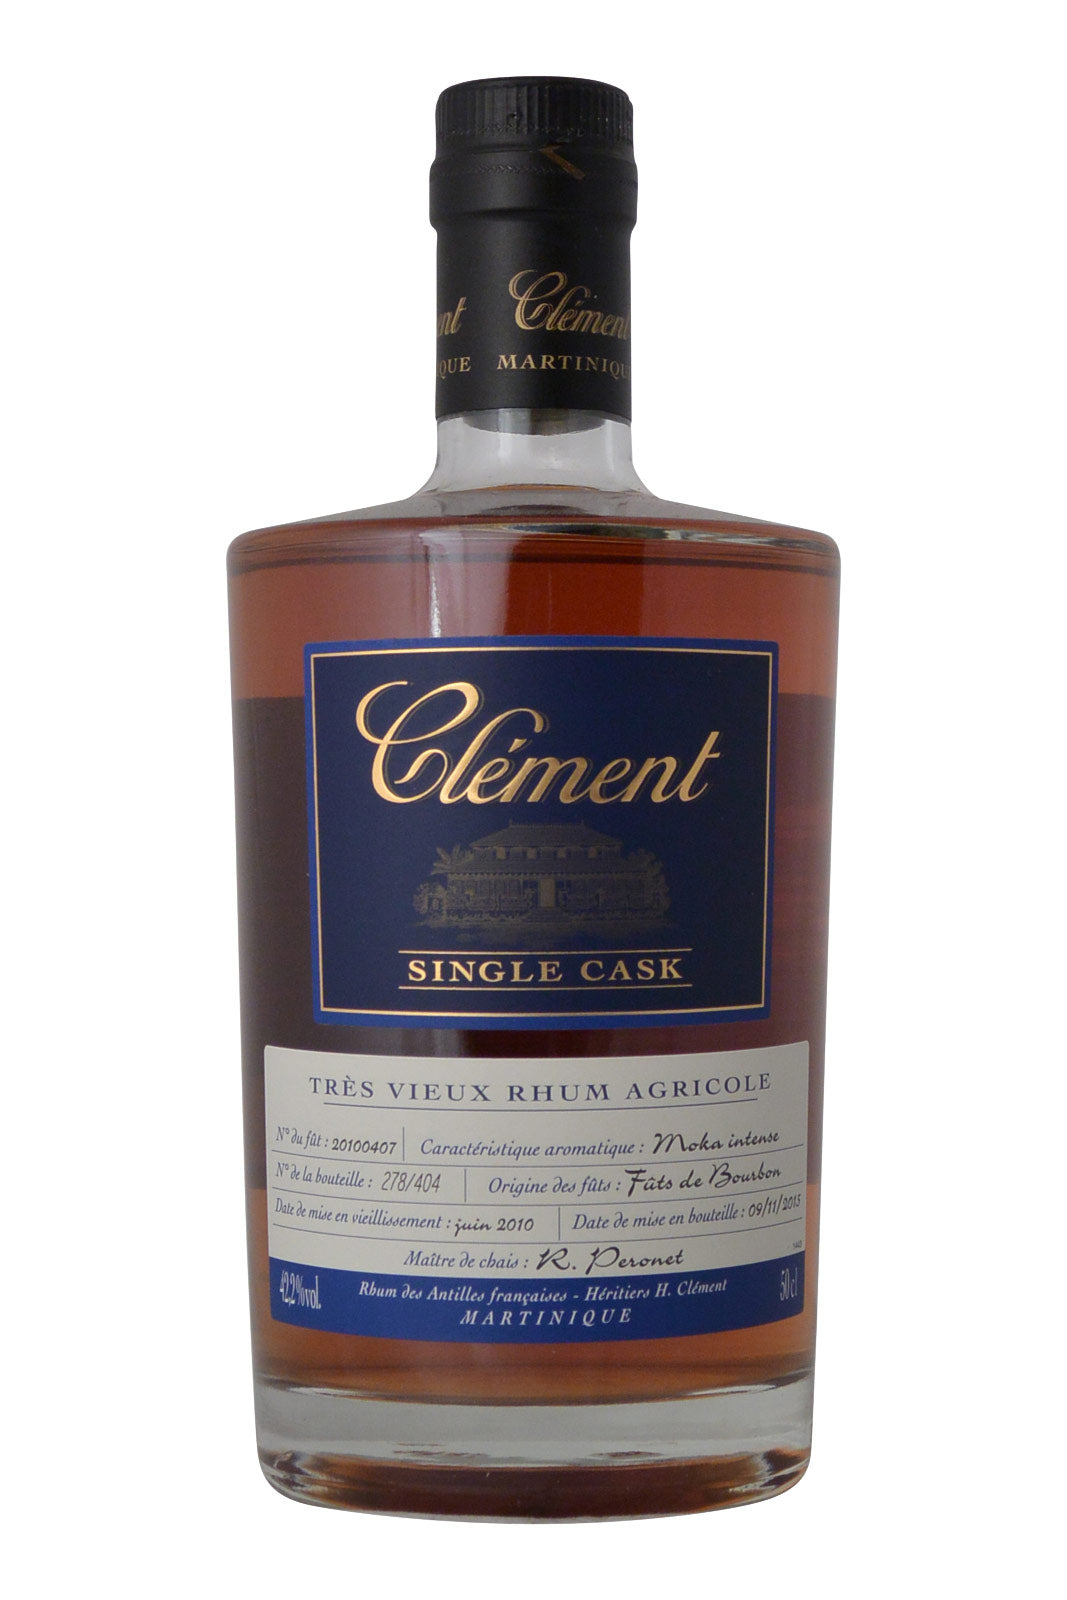 Clement Single Cask Rum 42.2% juin 2010 Moka Intense